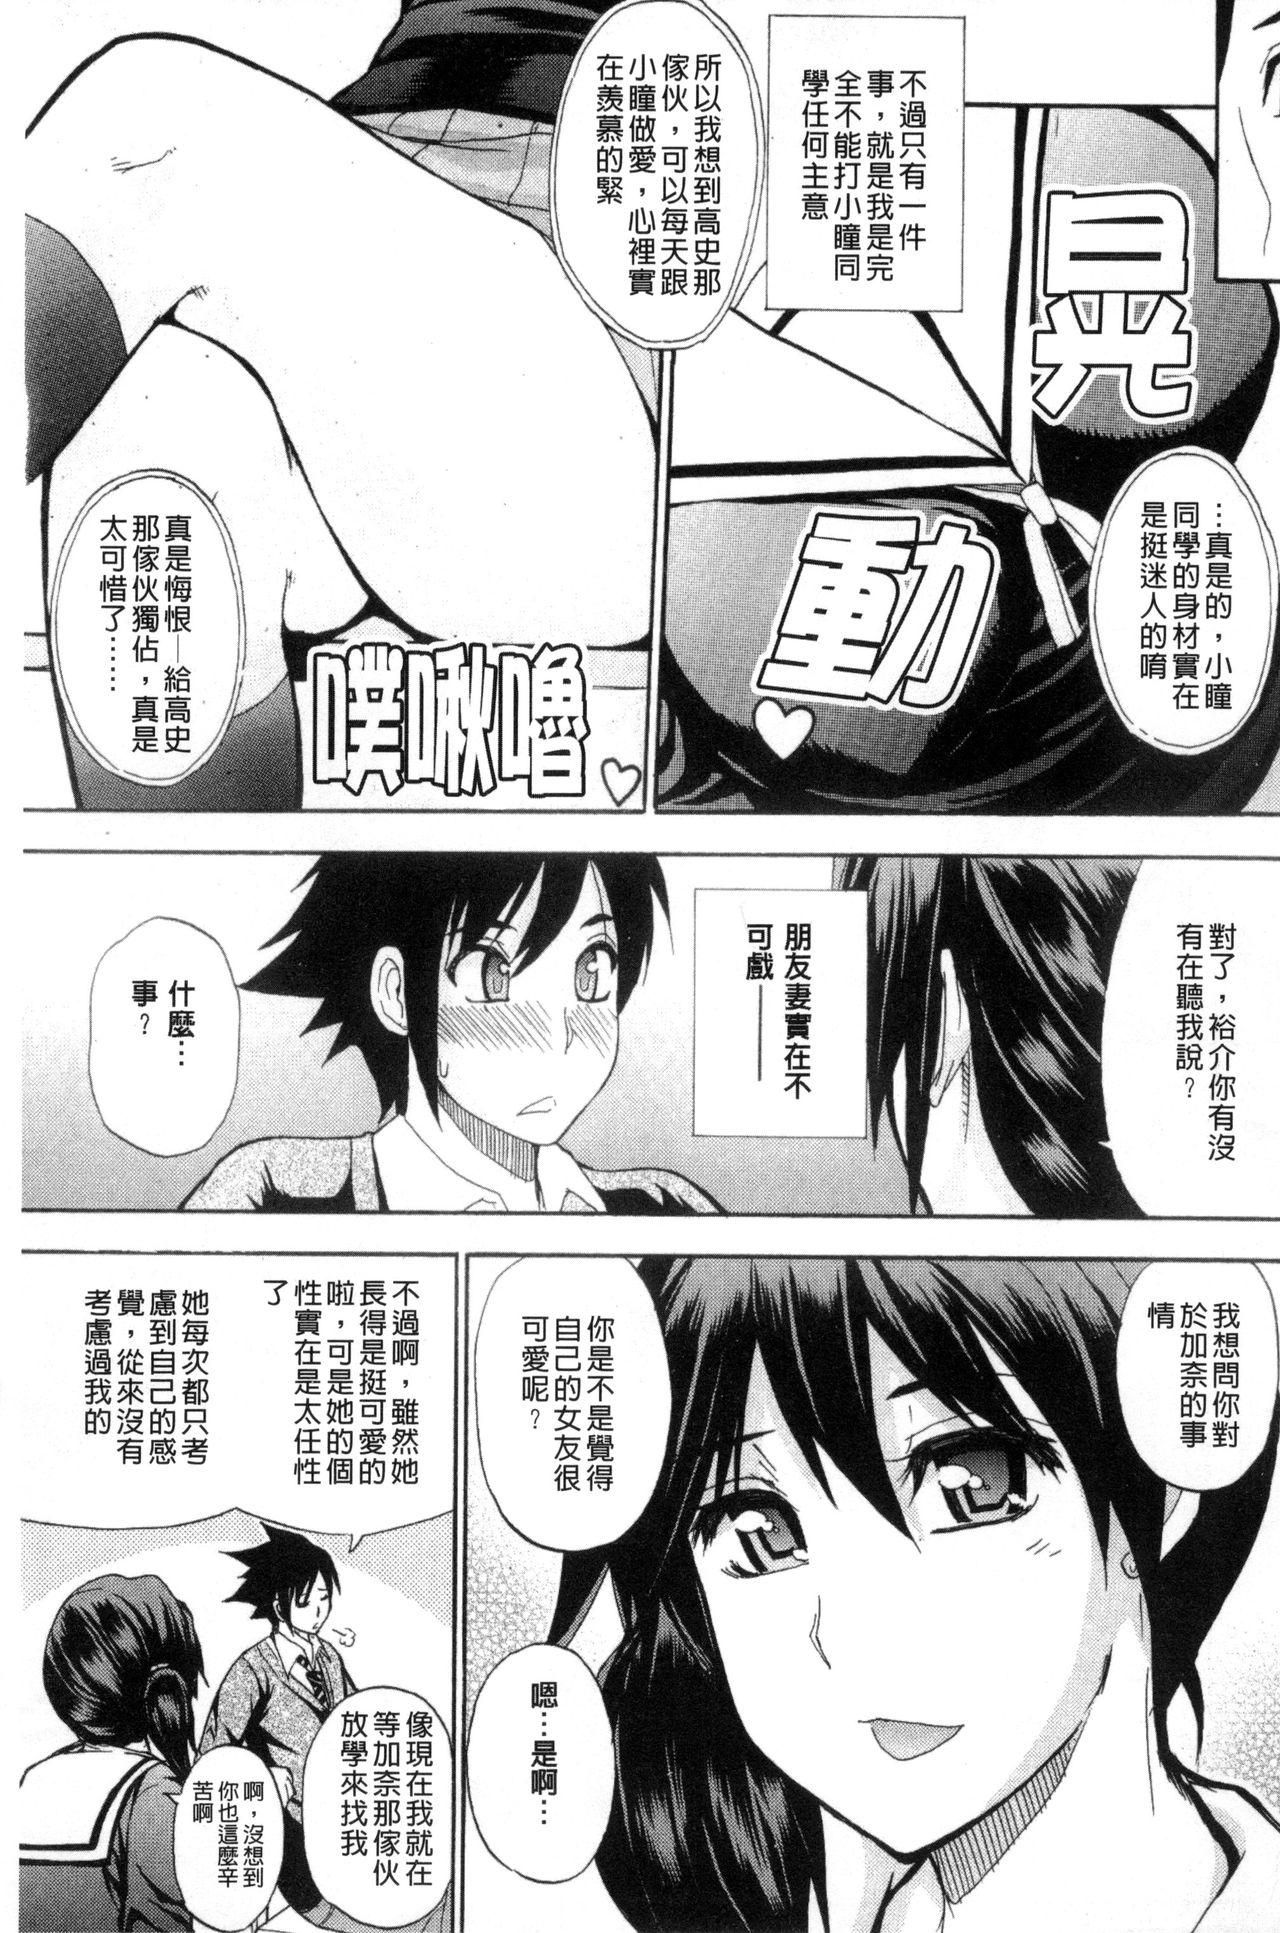 Boy Girl Watashi no Shitai ○○na Koto | 我所想做的○○行為 Unshaved - Page 6